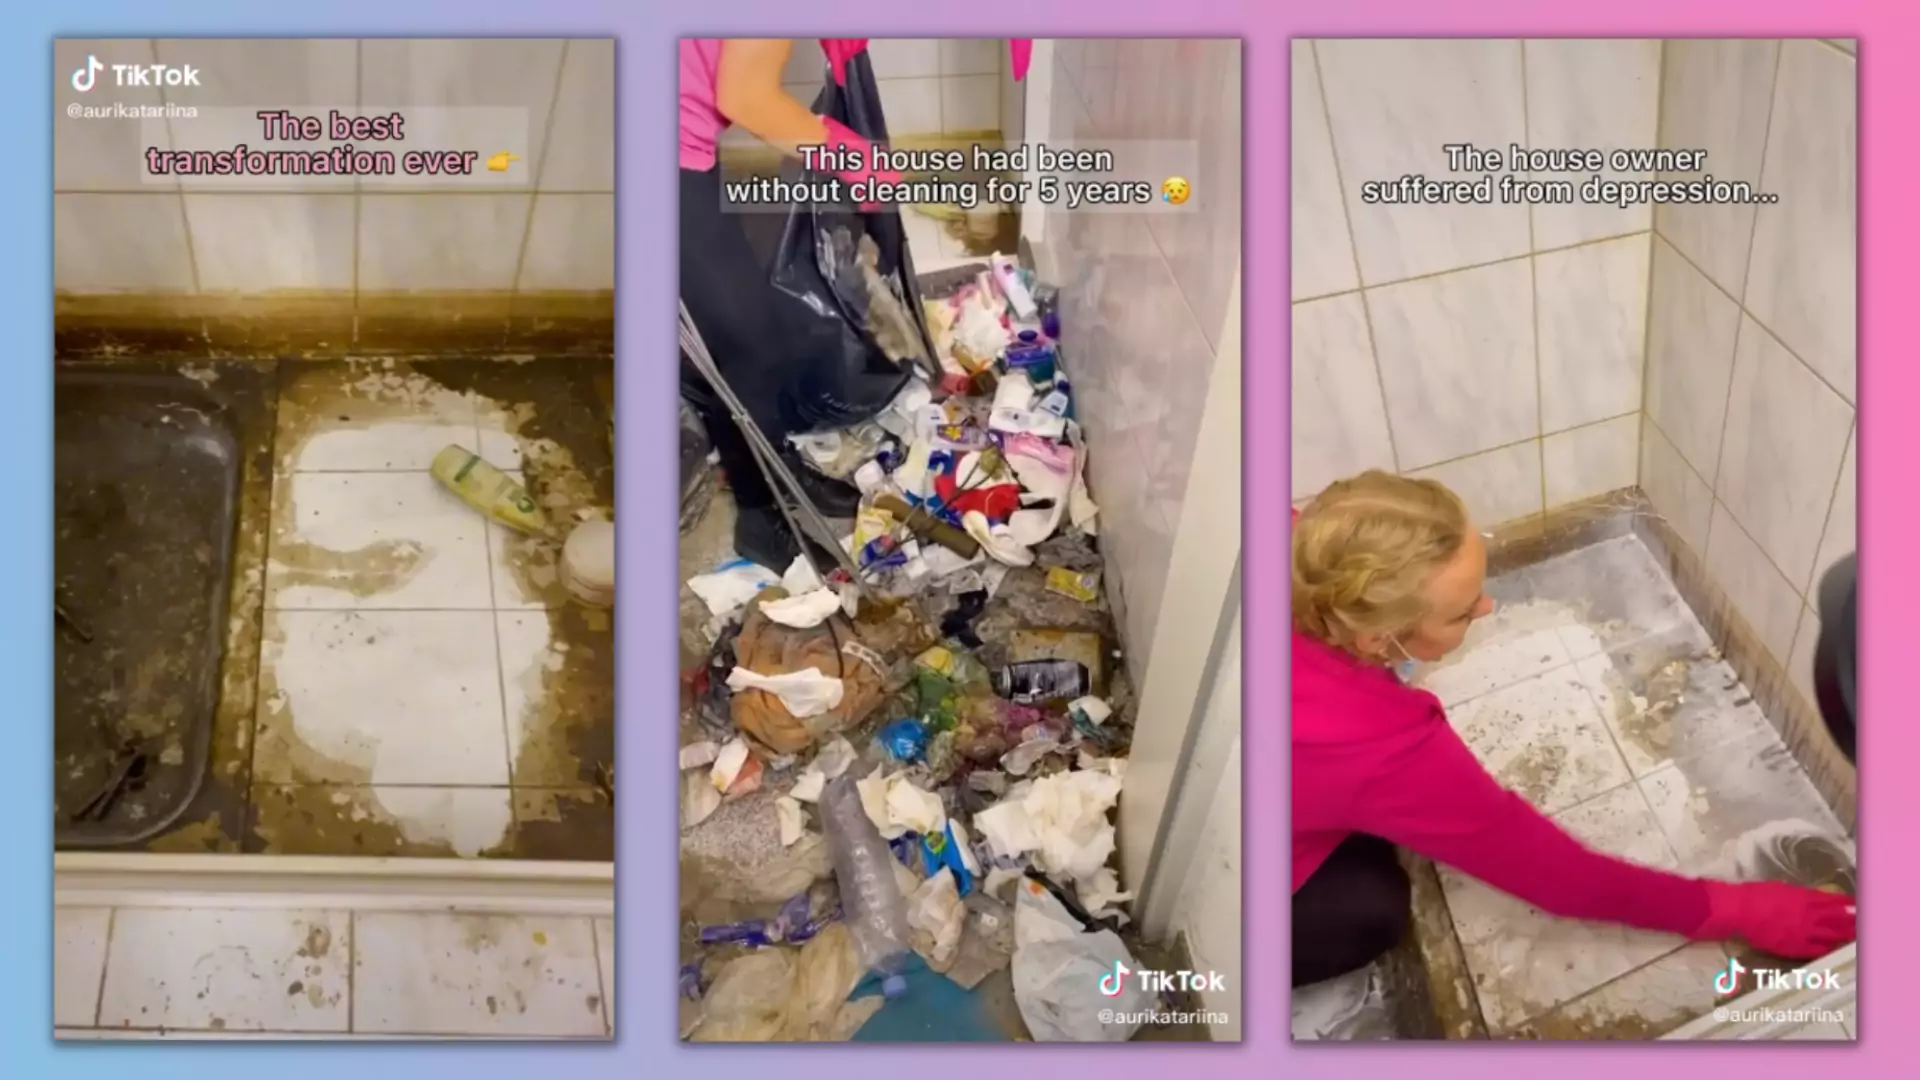 Łazienka niesprzątana od pięciu lat. "Najbrudniejszy dom w Europie"